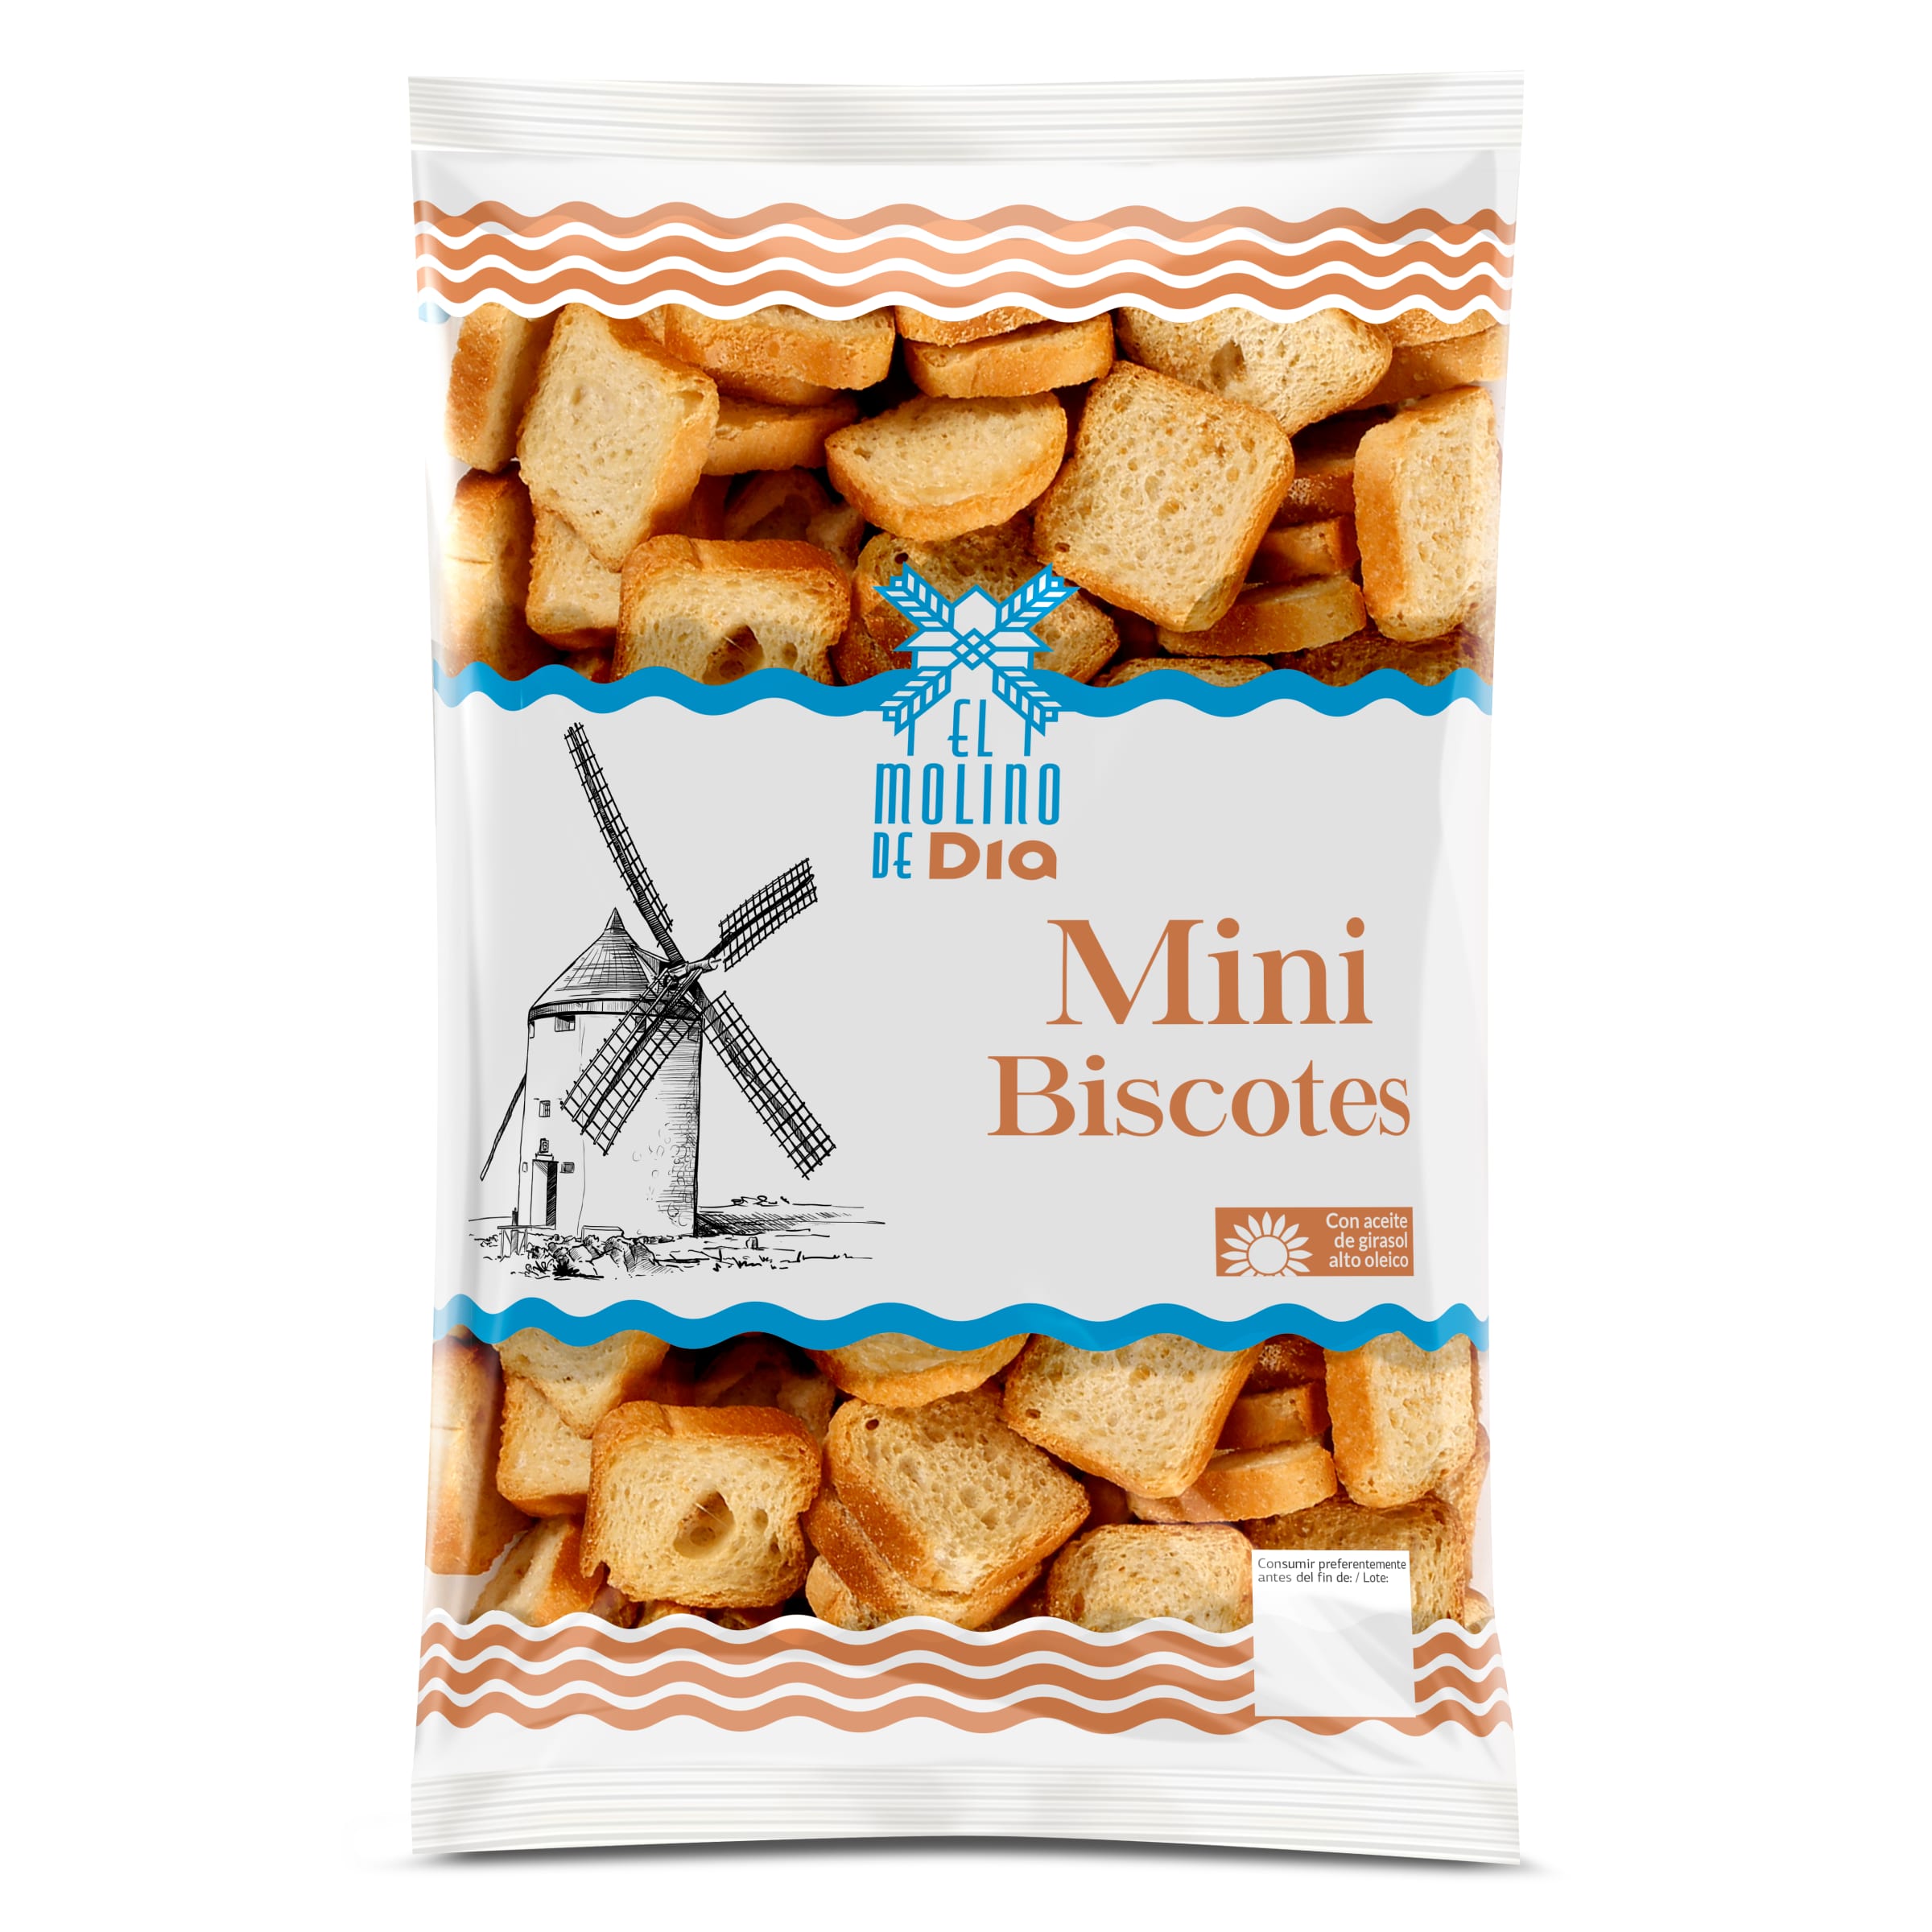 Mini biscotes El molino de Dia bolsa 240 g - Supermercados DIA